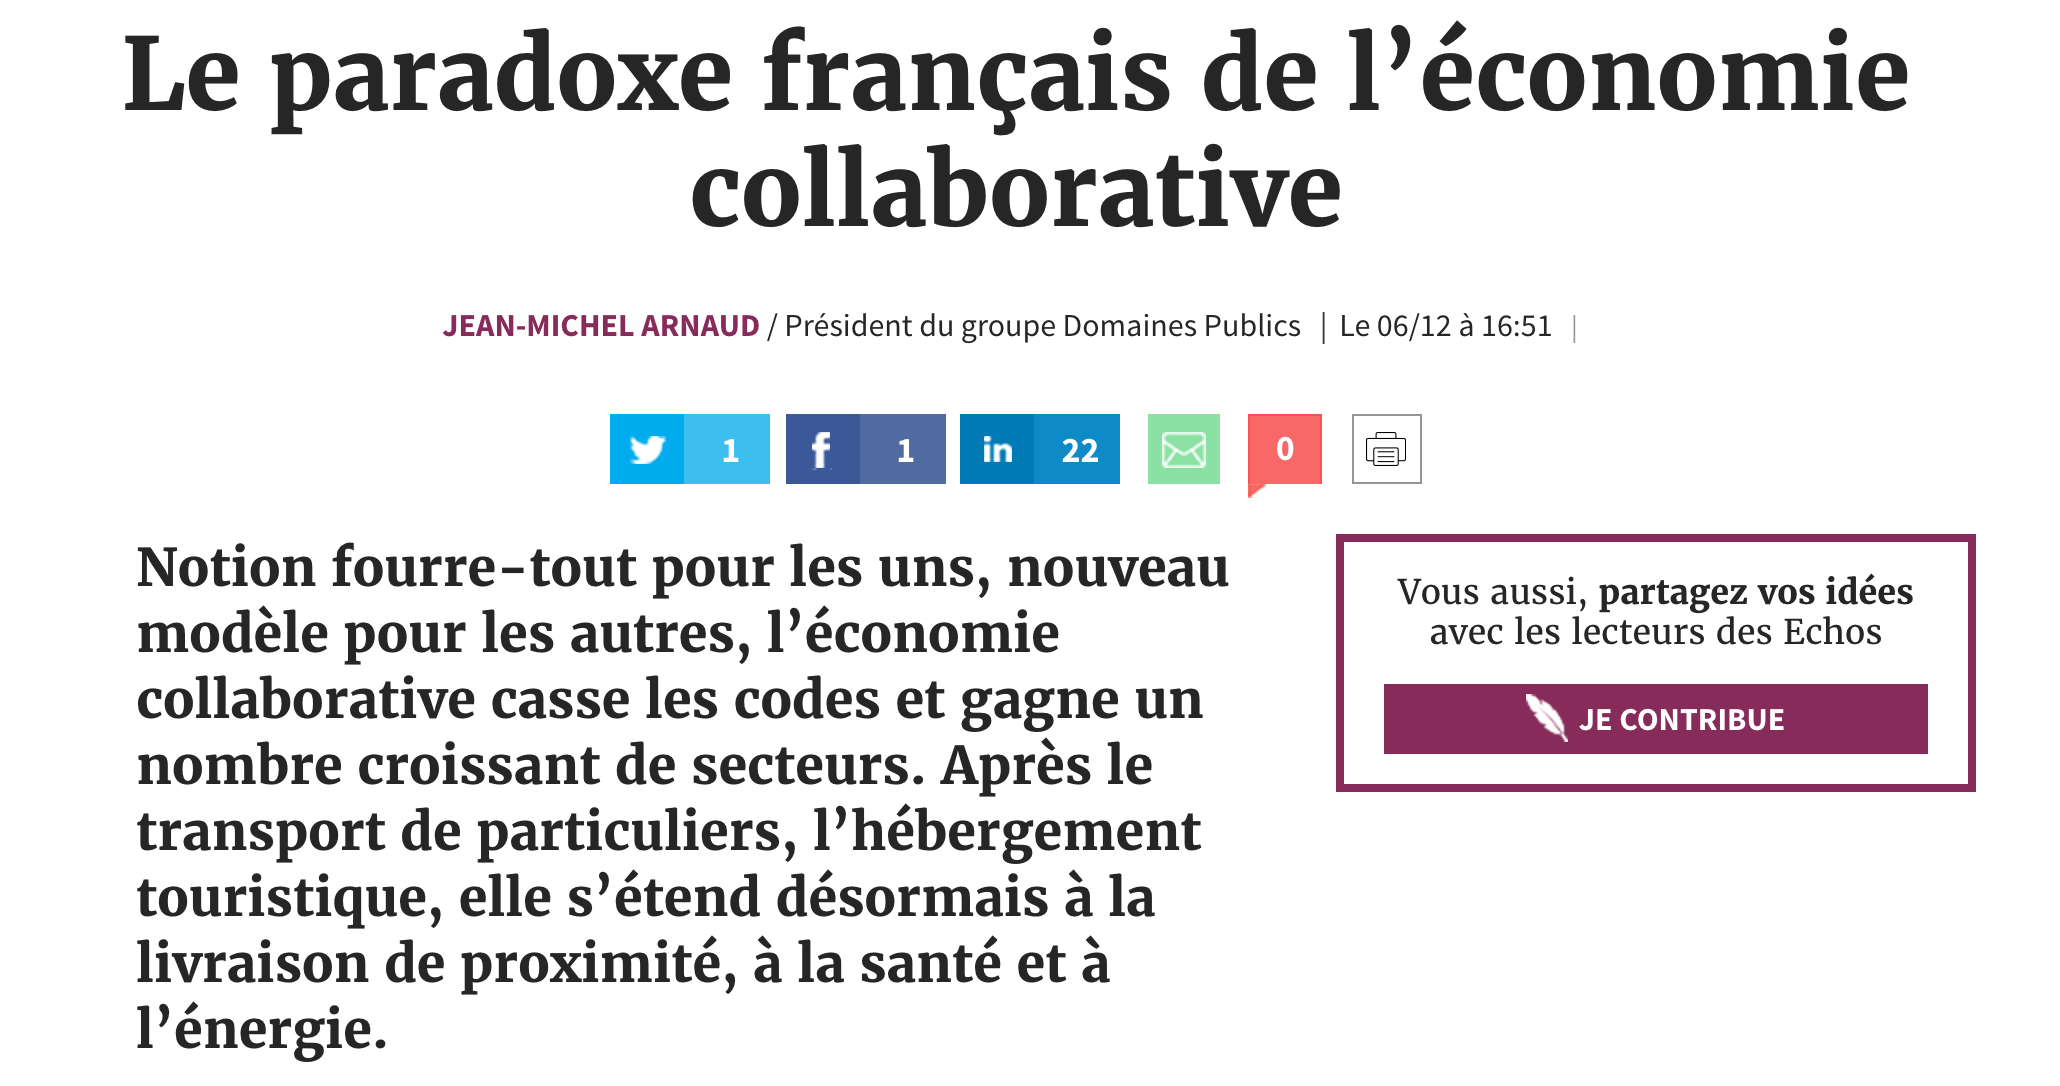 Le paradoxe français de l’économie collaborative